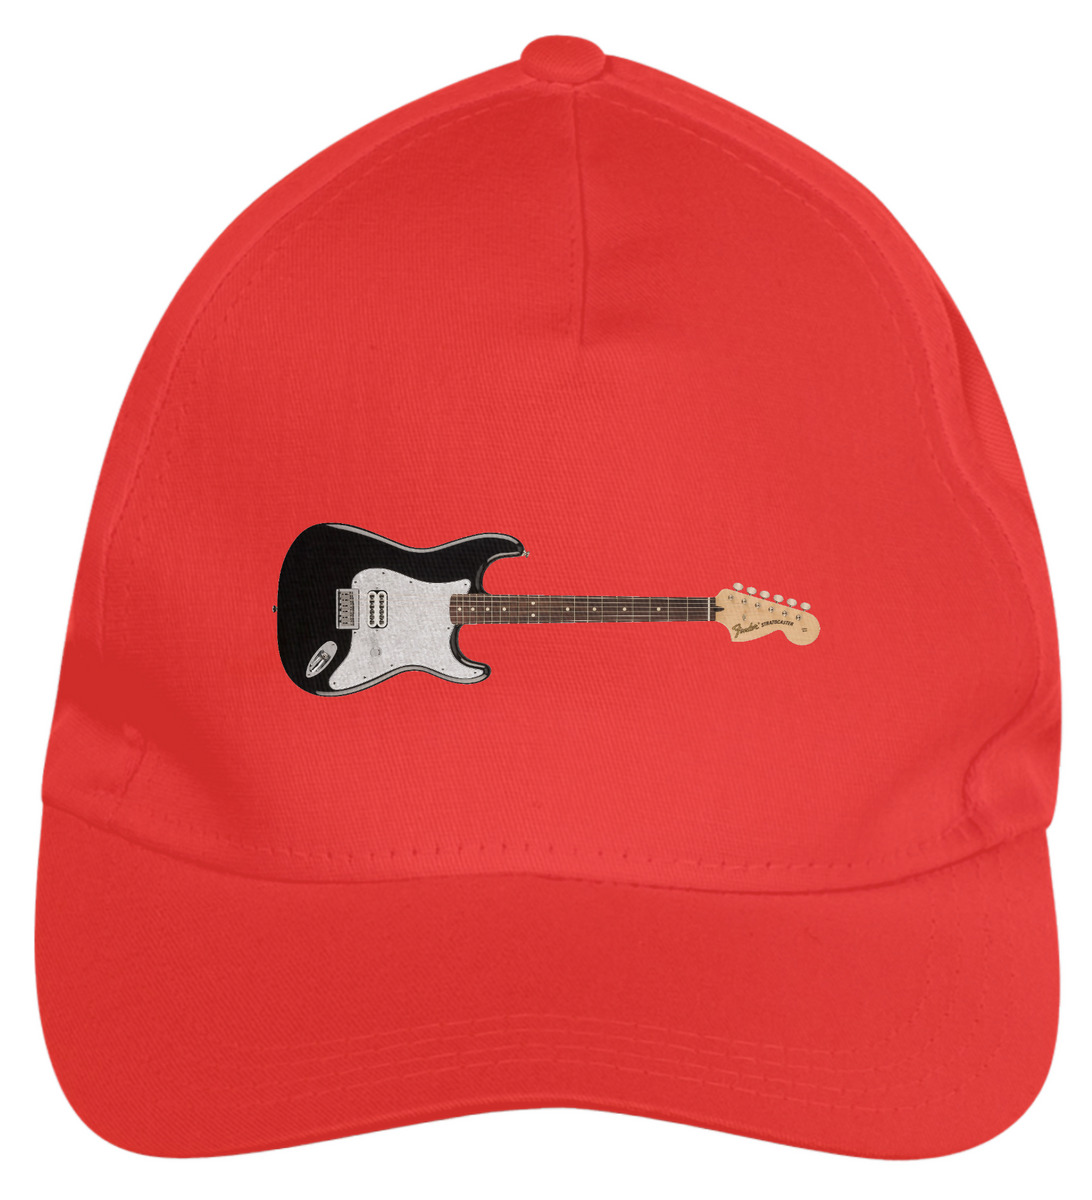 Nome do produto: Boné de Brim - Guitarra Fender Tom DeLonge Signature Stratocaster